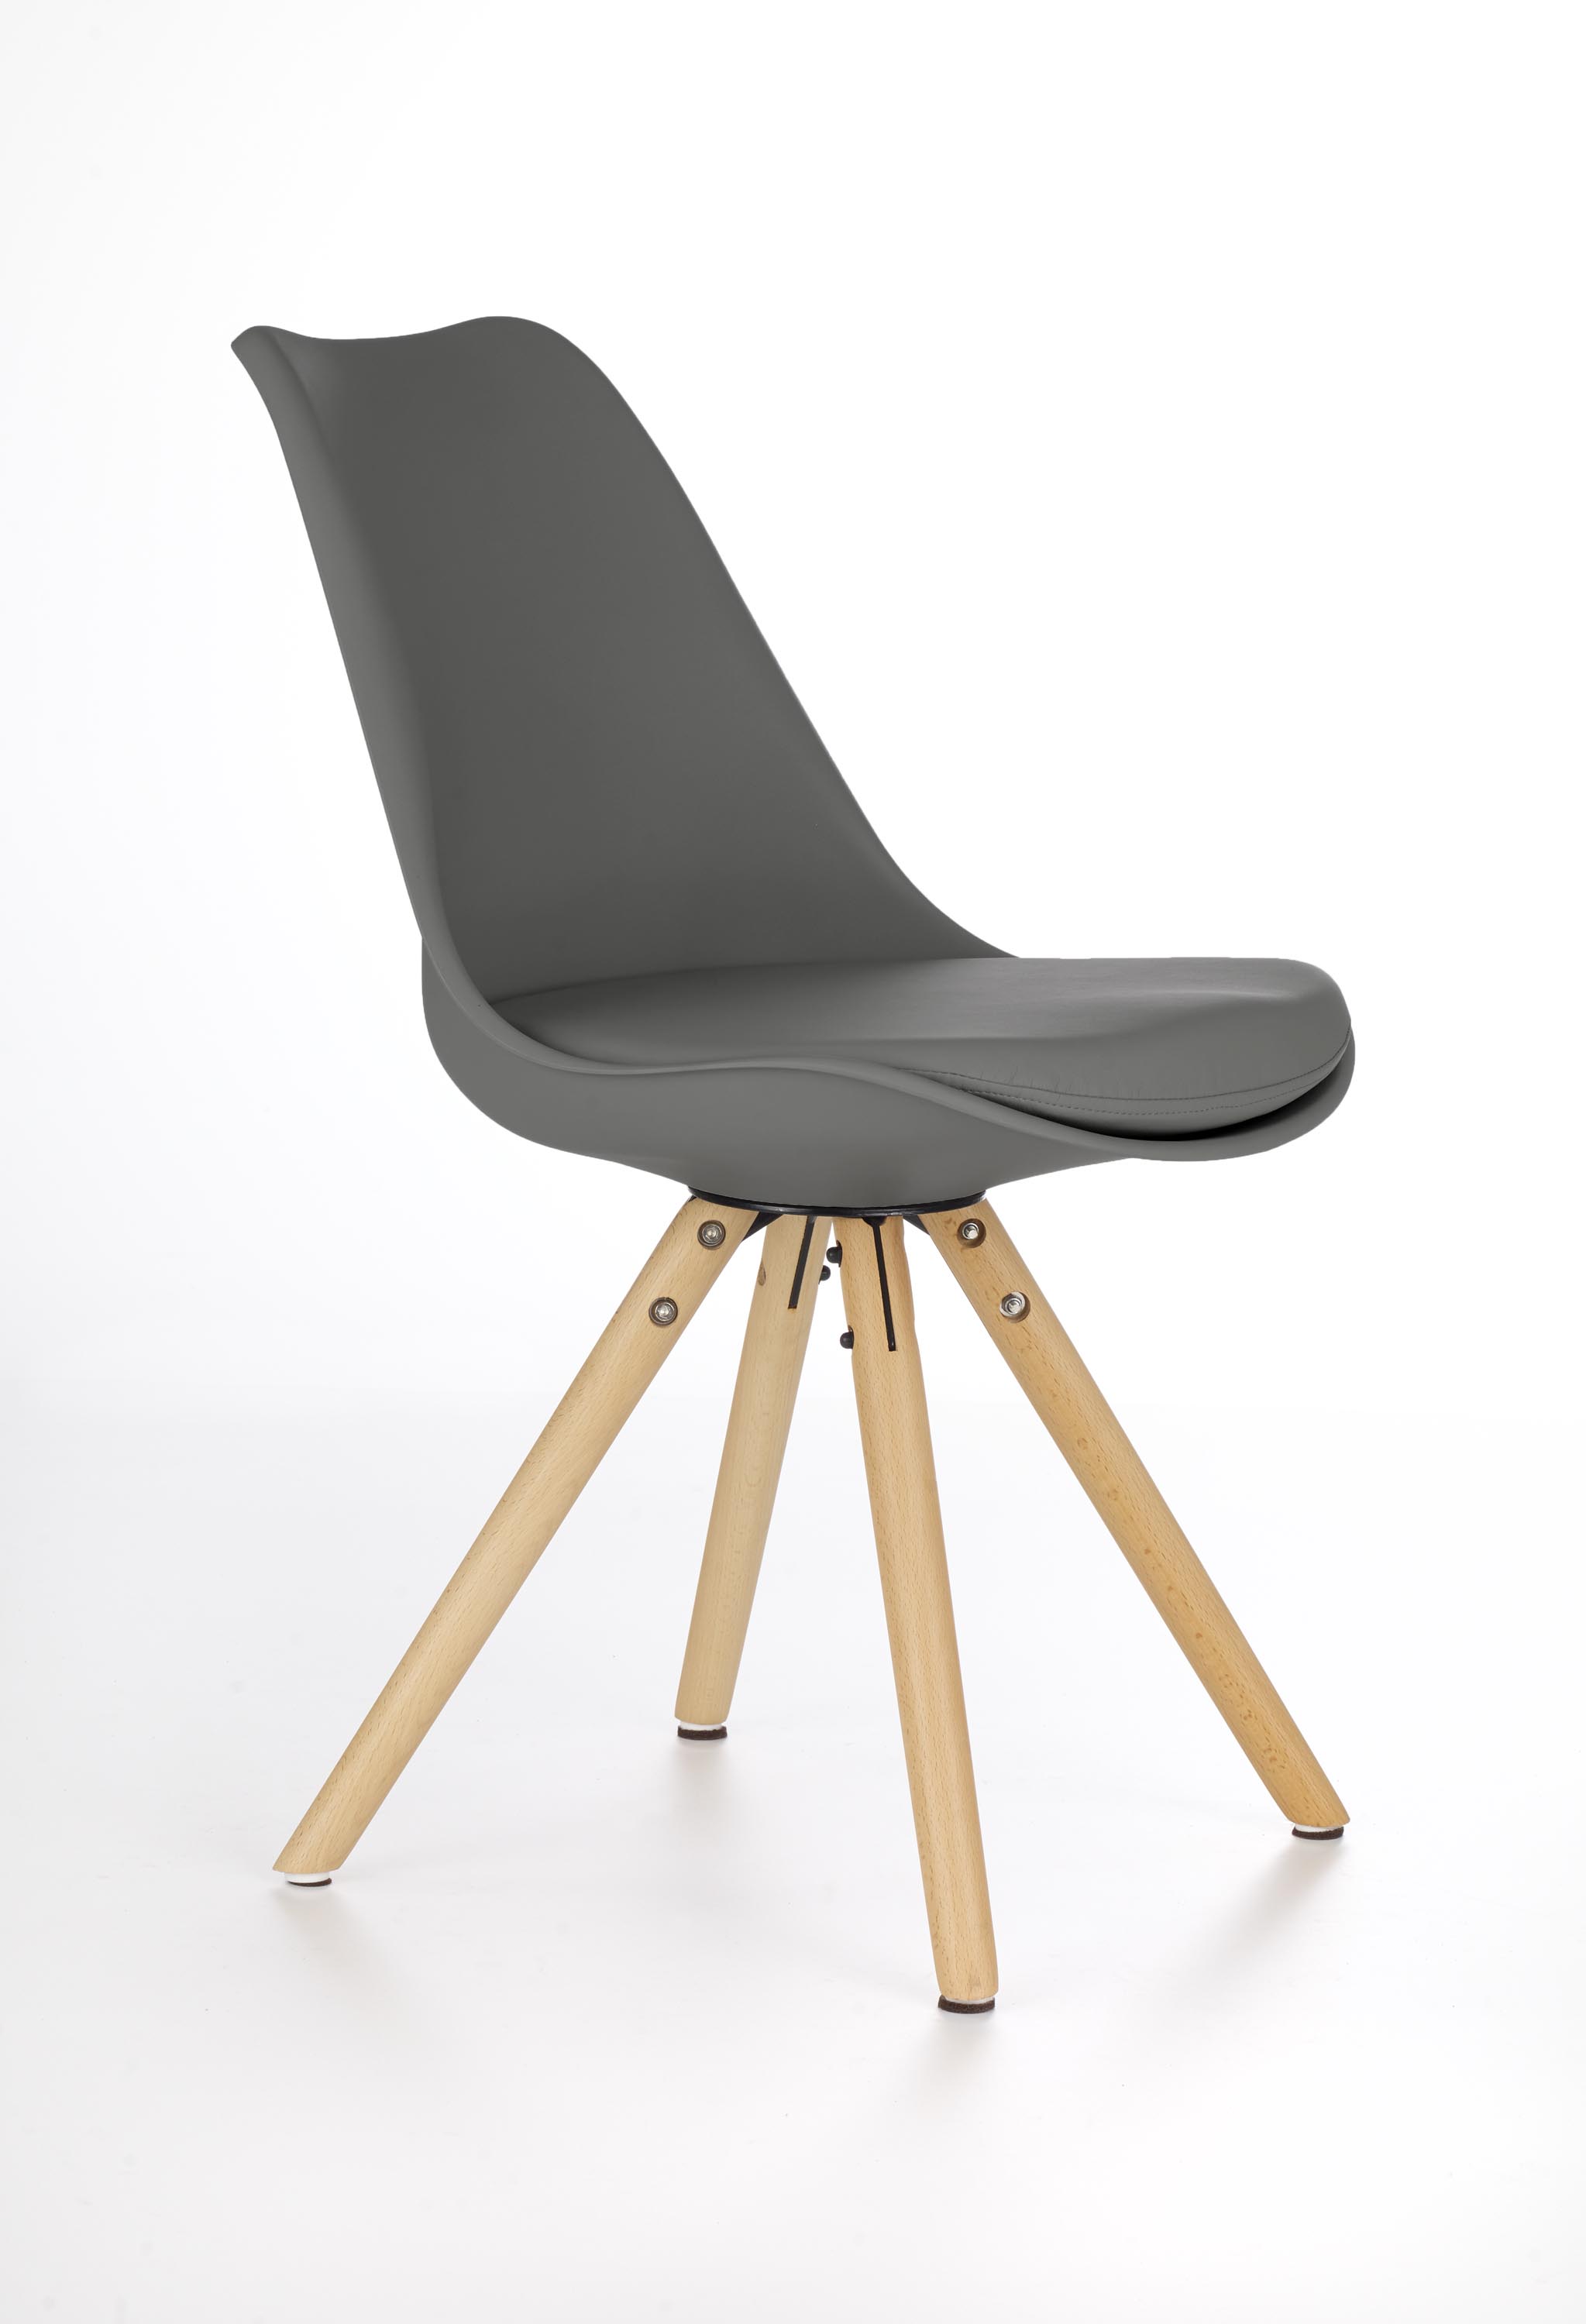 K201 szék - hamu k201 Židle popel